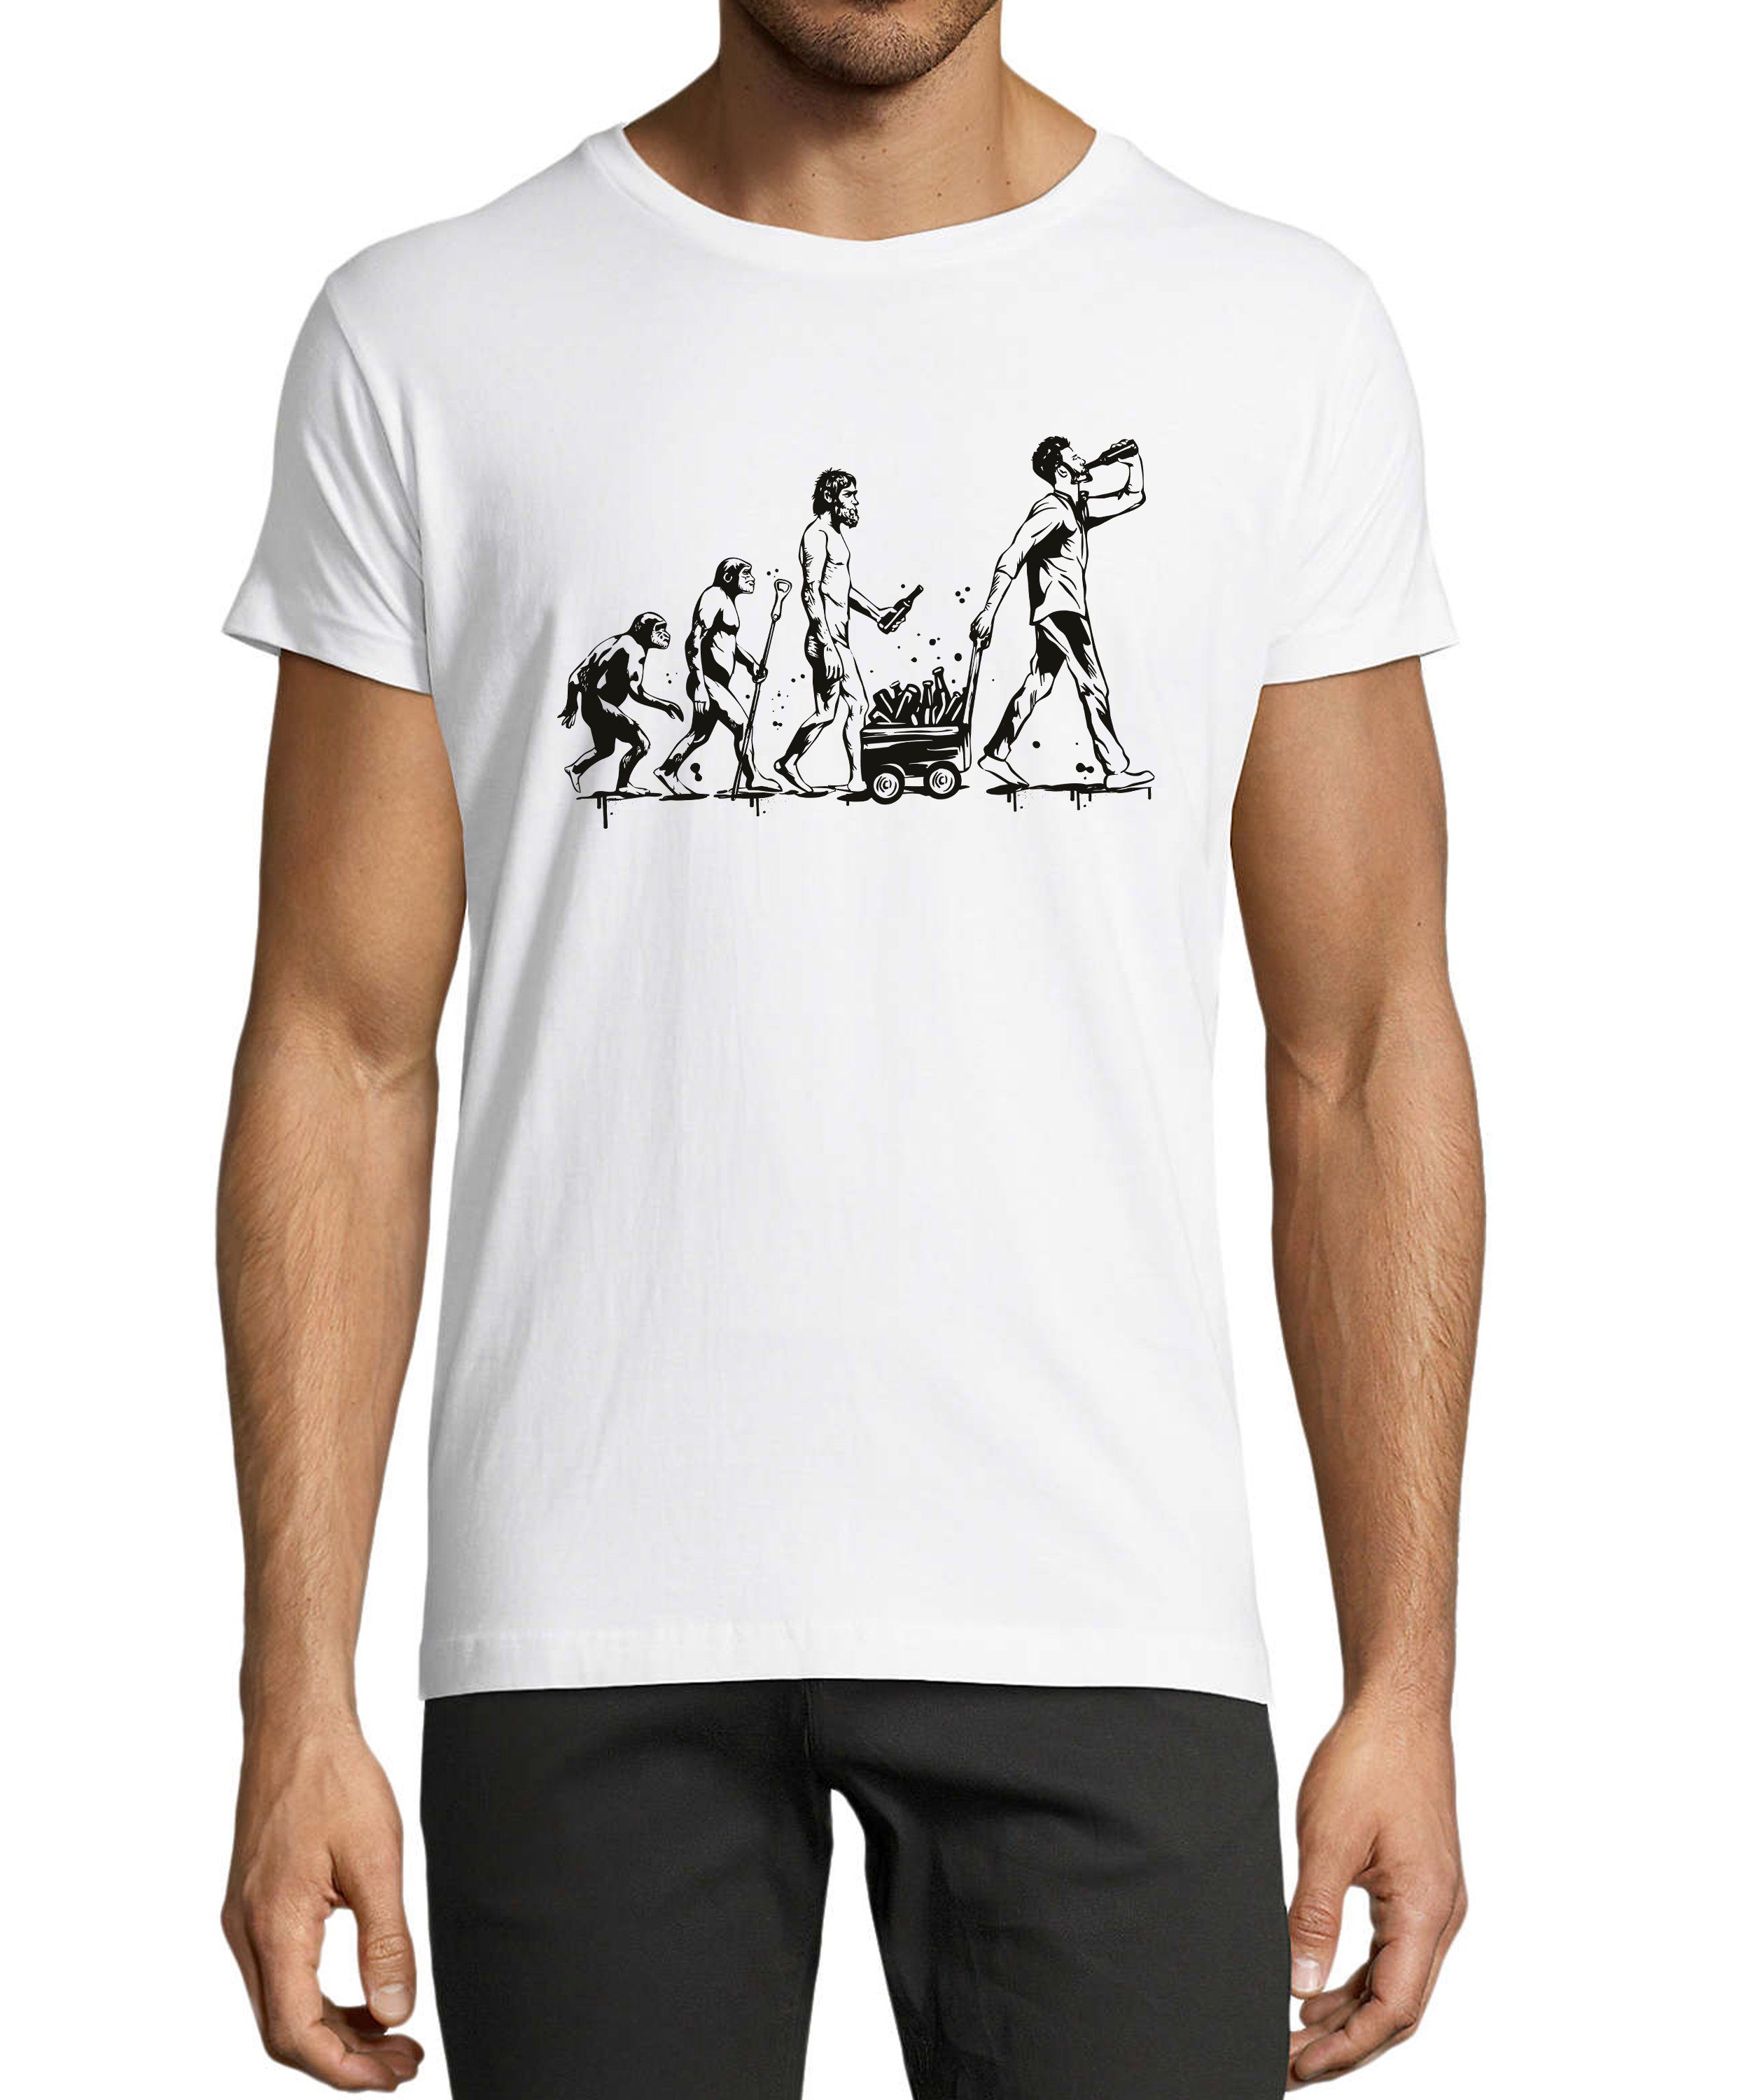 MyDesign24 T-Shirt Herren Fun Print Shirt - Trinkshirt Evolution bis zum trinkenden Mann Baumwollshirt mit Aufdruck Regular Fit, i312 weiss